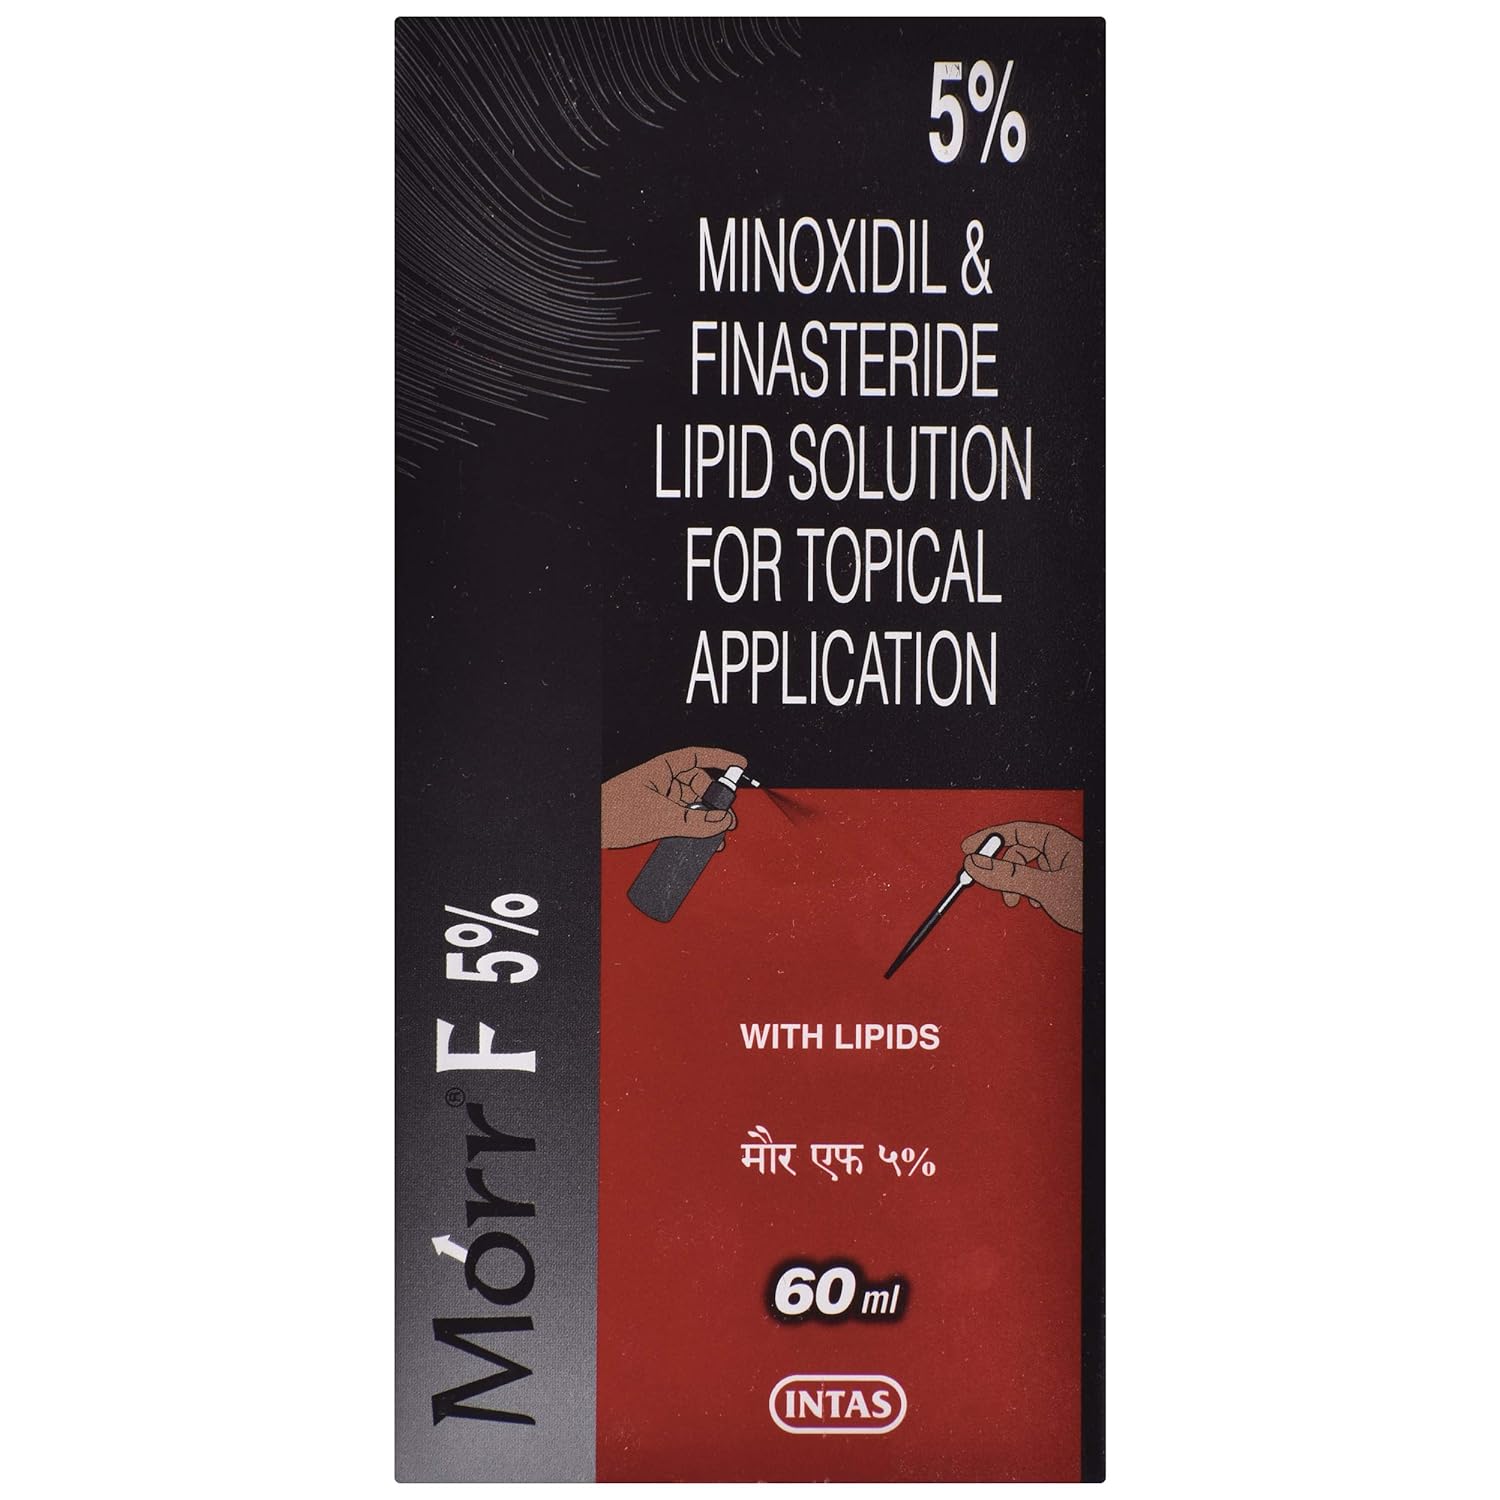 Morr F 5% - Bottle of 60 ml Solution